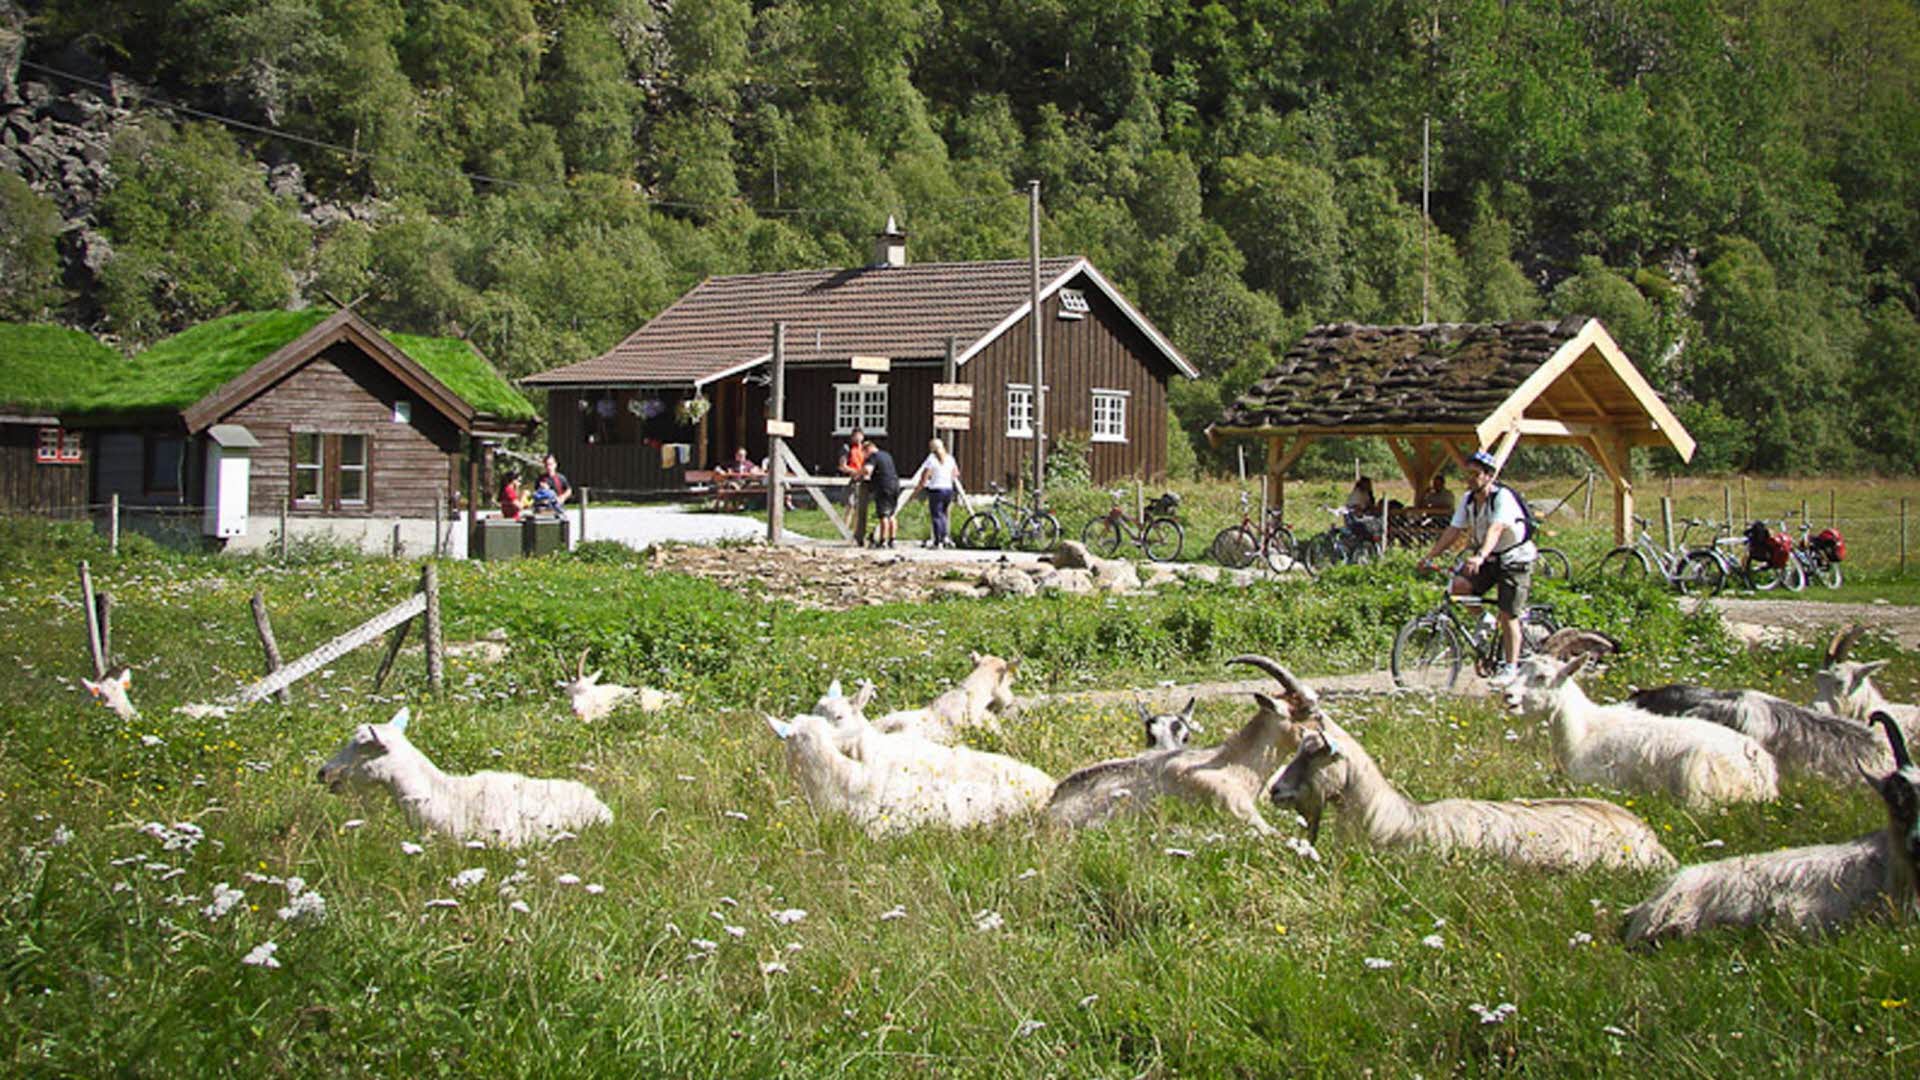 Rallarosa Stølsysteri in Flåmsdalen, people and goats having fun outside